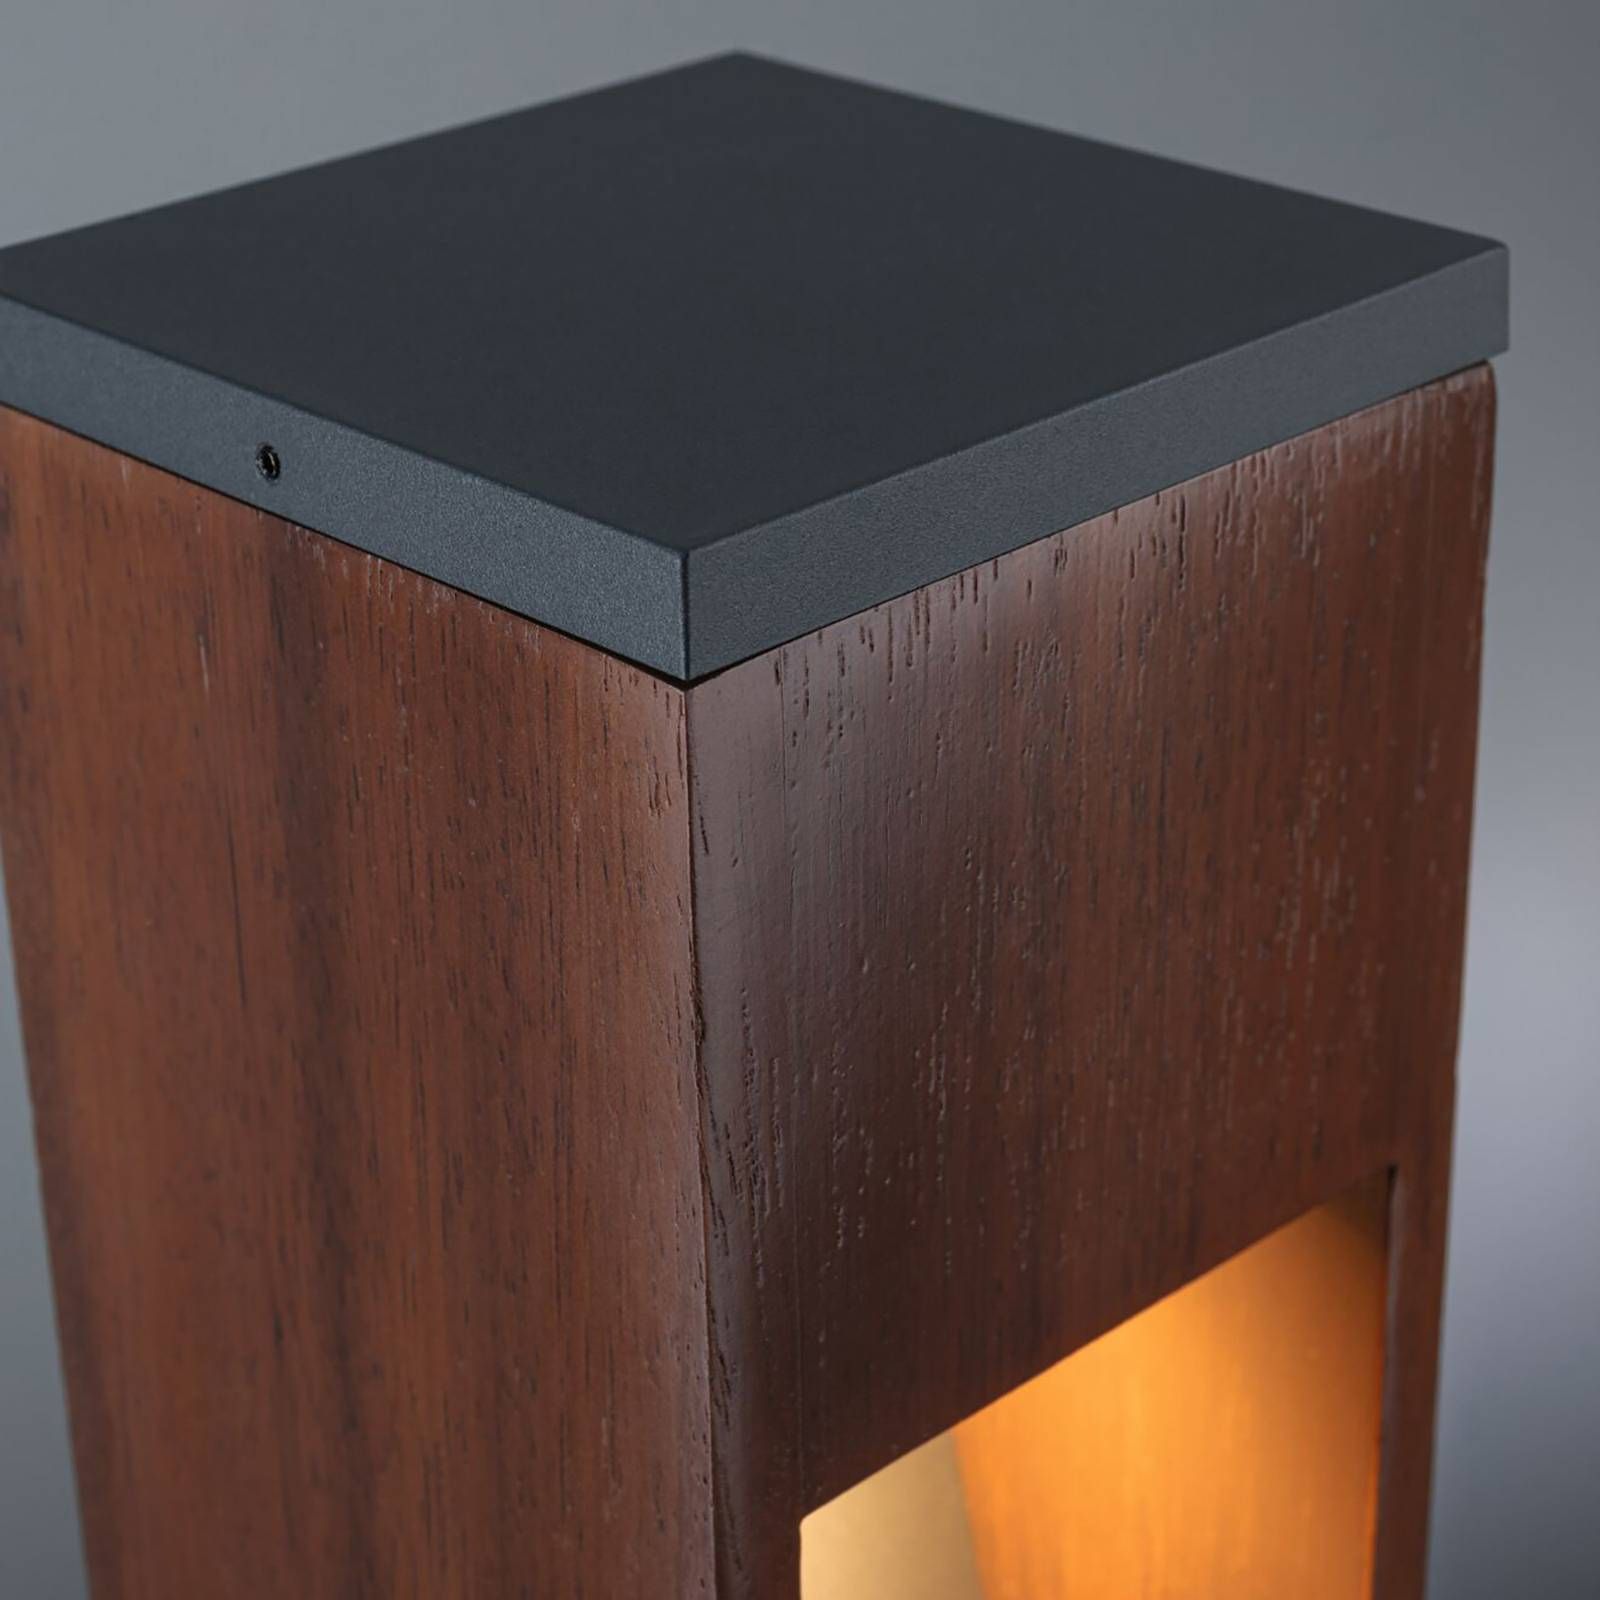 Paulmann Trabia soklové LED drevo, výška 40 cm, kov, drevo, GU10, 3.5W, P: 10 cm, L: 10 cm, K: 40cm